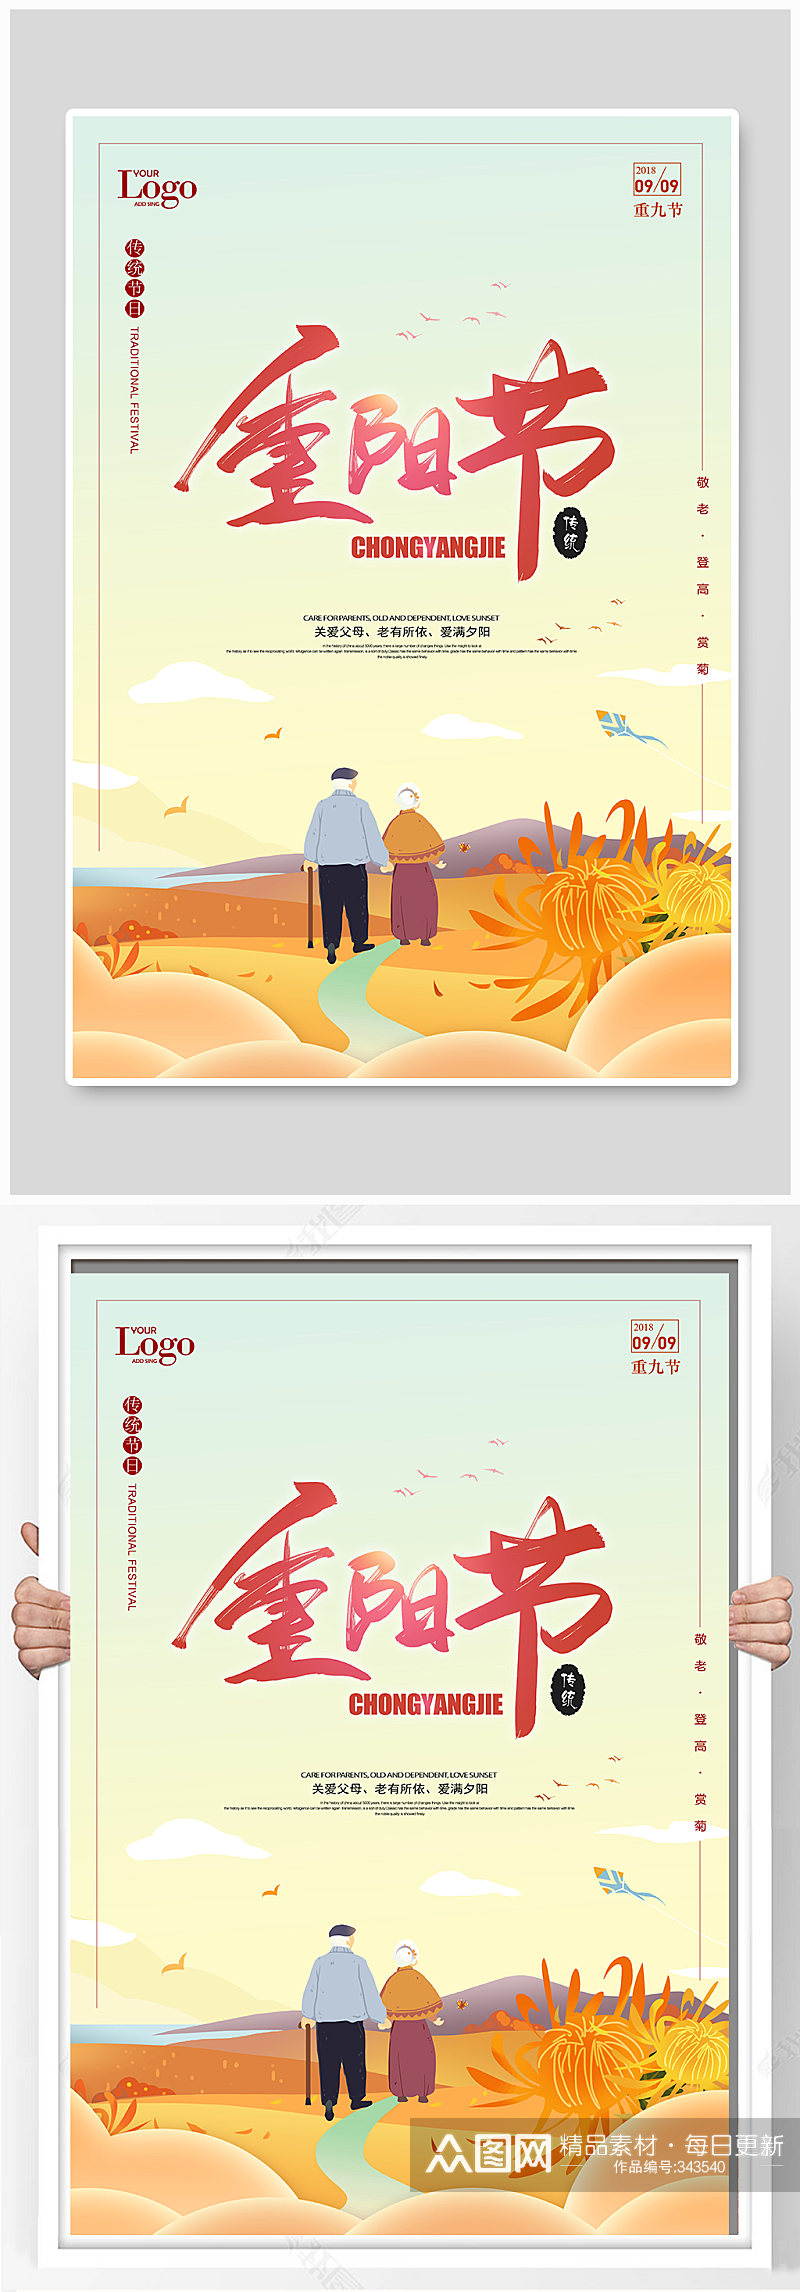 中国传统节日重阳节海报素材